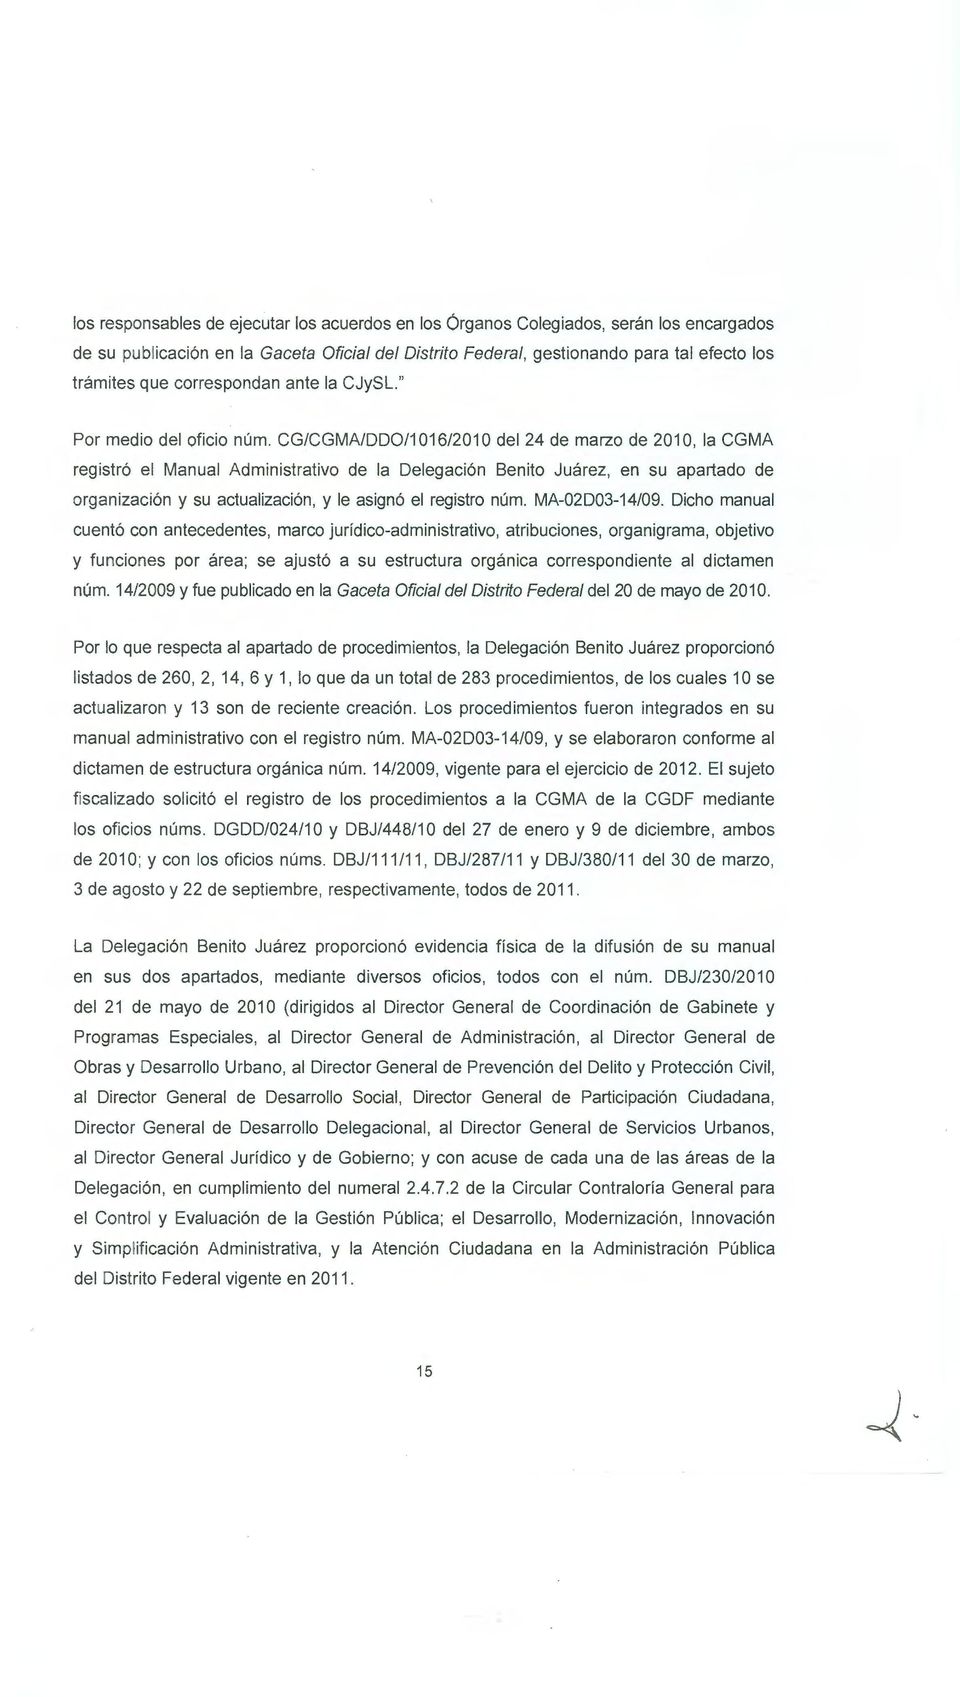 CG/CGMA/DD0/1 016/201 O del 24 de marzo de 201 O, la CGMA registró el Manual Administrativo de la Delegación Benito Juárez, en su apartado de organización y su actualización, y le asignó el registro